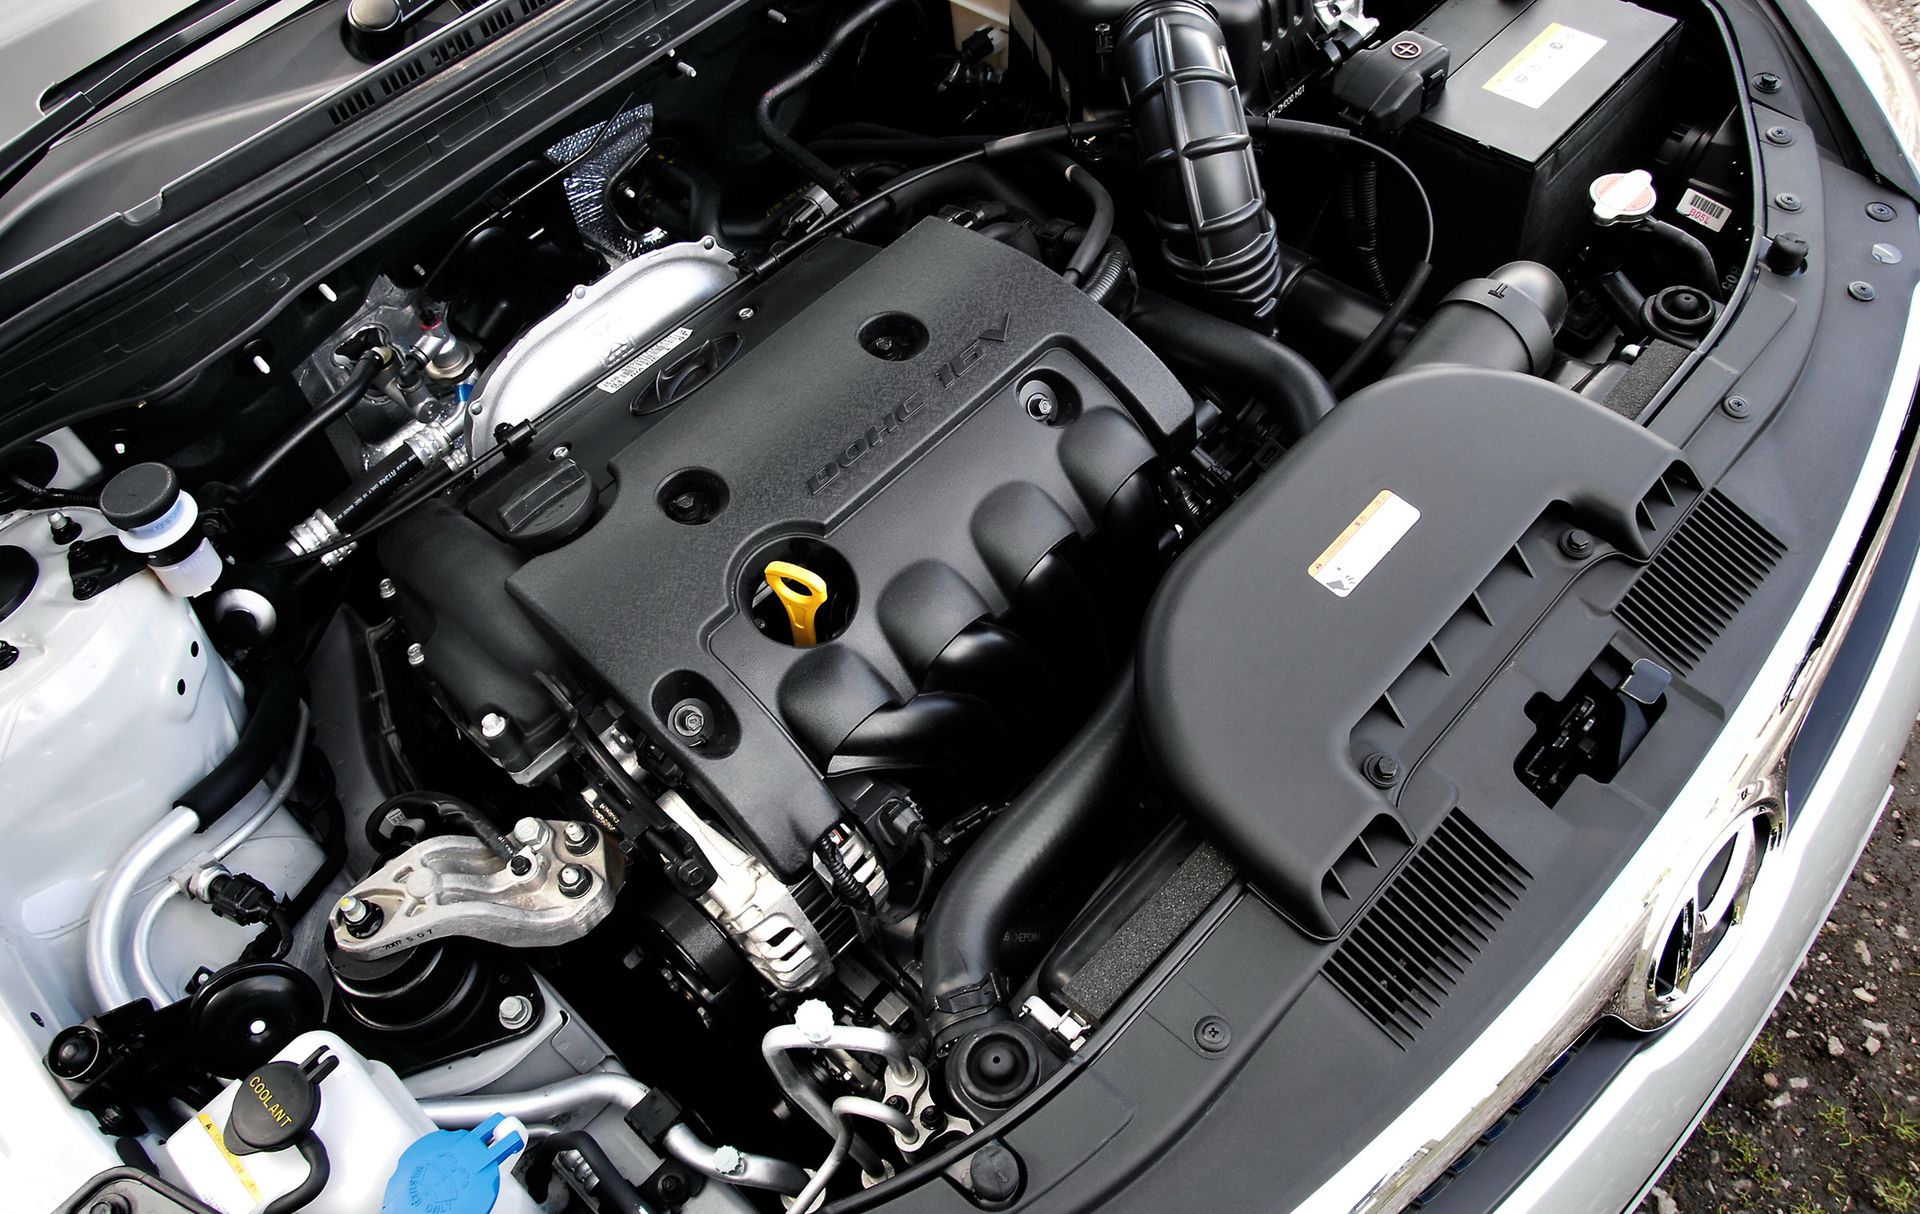 Silniki 1.6 W Kompaktach: Diesel Czy Benzyna? [Cz.2] | Autokult.pl